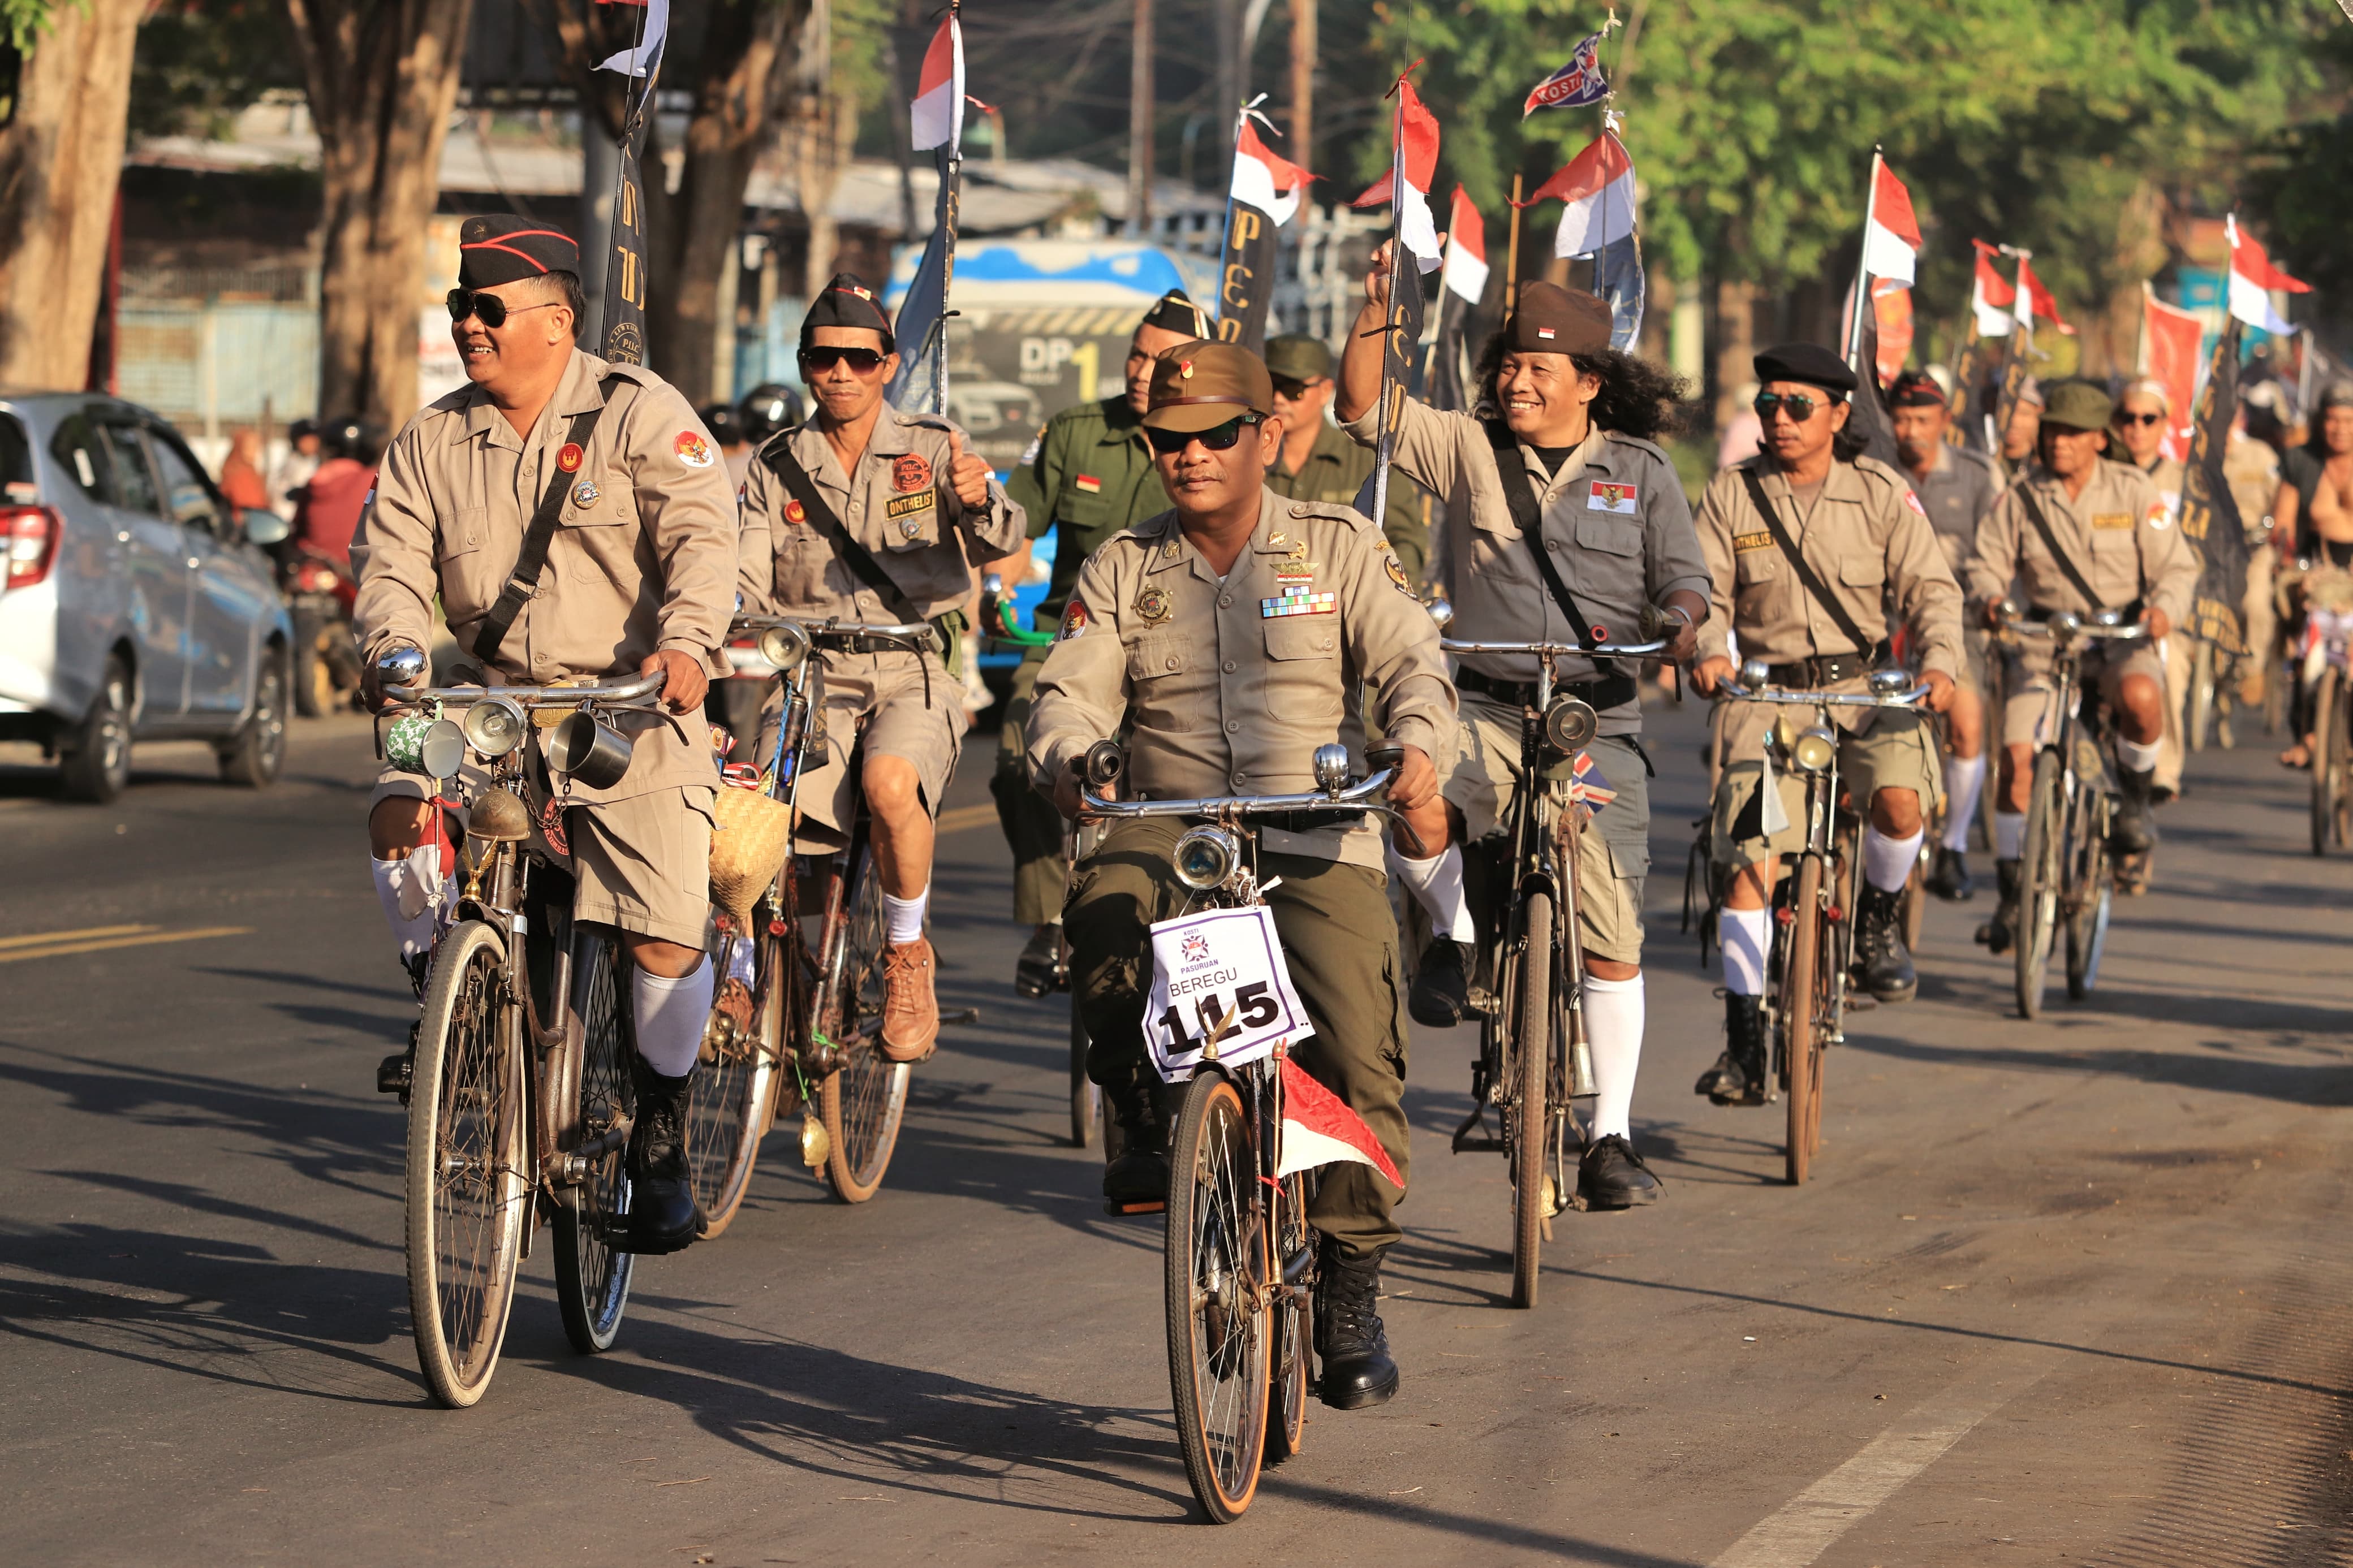 Ngonthel Bareng Wali Kota, Komunitas Sepeda Tua Hiasi Jalanan Kota Pasuruan